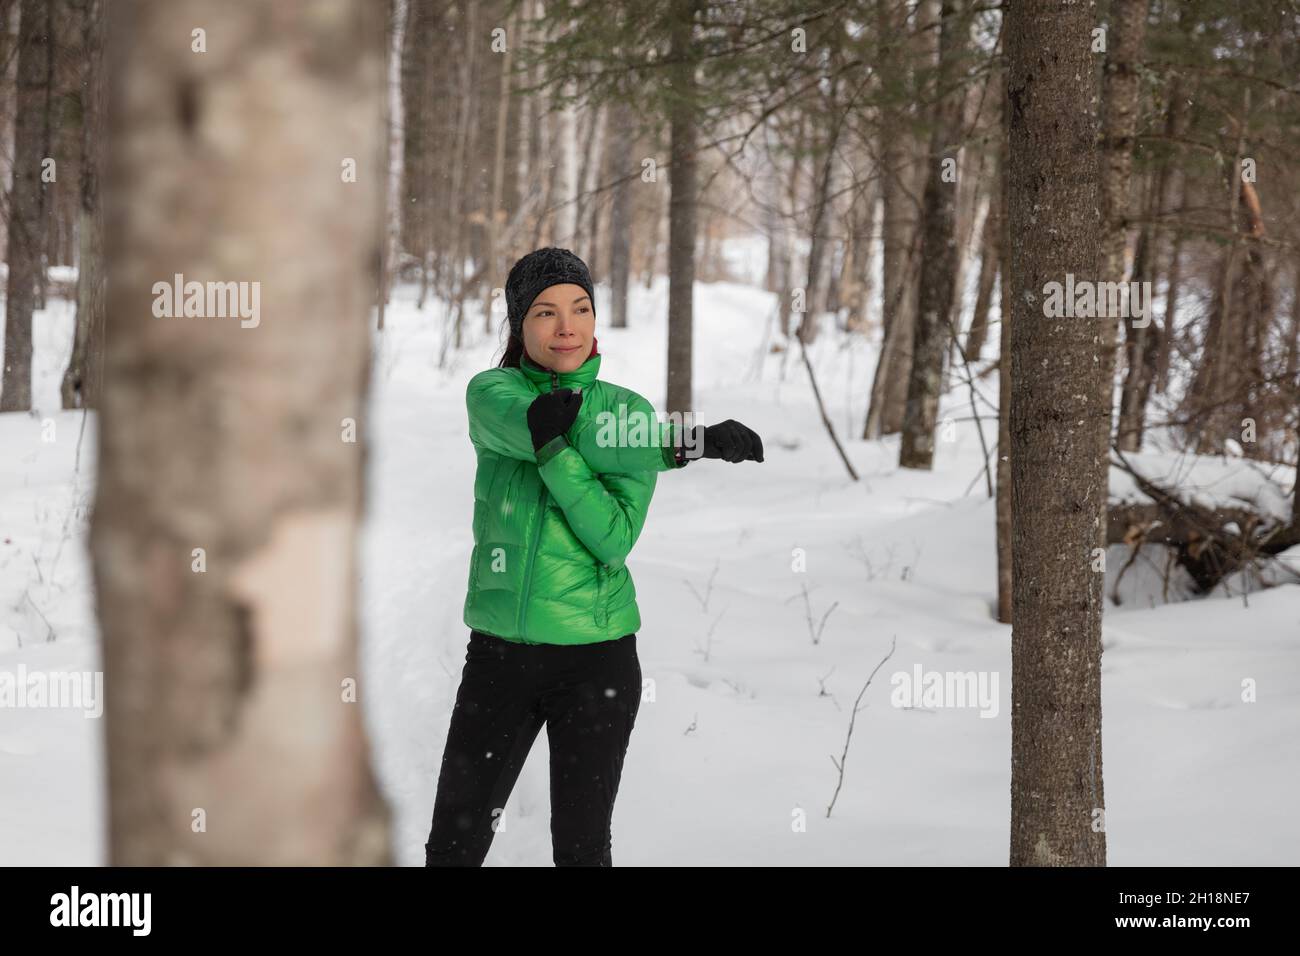 Inverno fitness atleta donna riscaldare le braccia stretching prima della sua corsa all'aperto sulla pista da neve. Corridore asiatico che indossa guanti per climi freddi Foto Stock